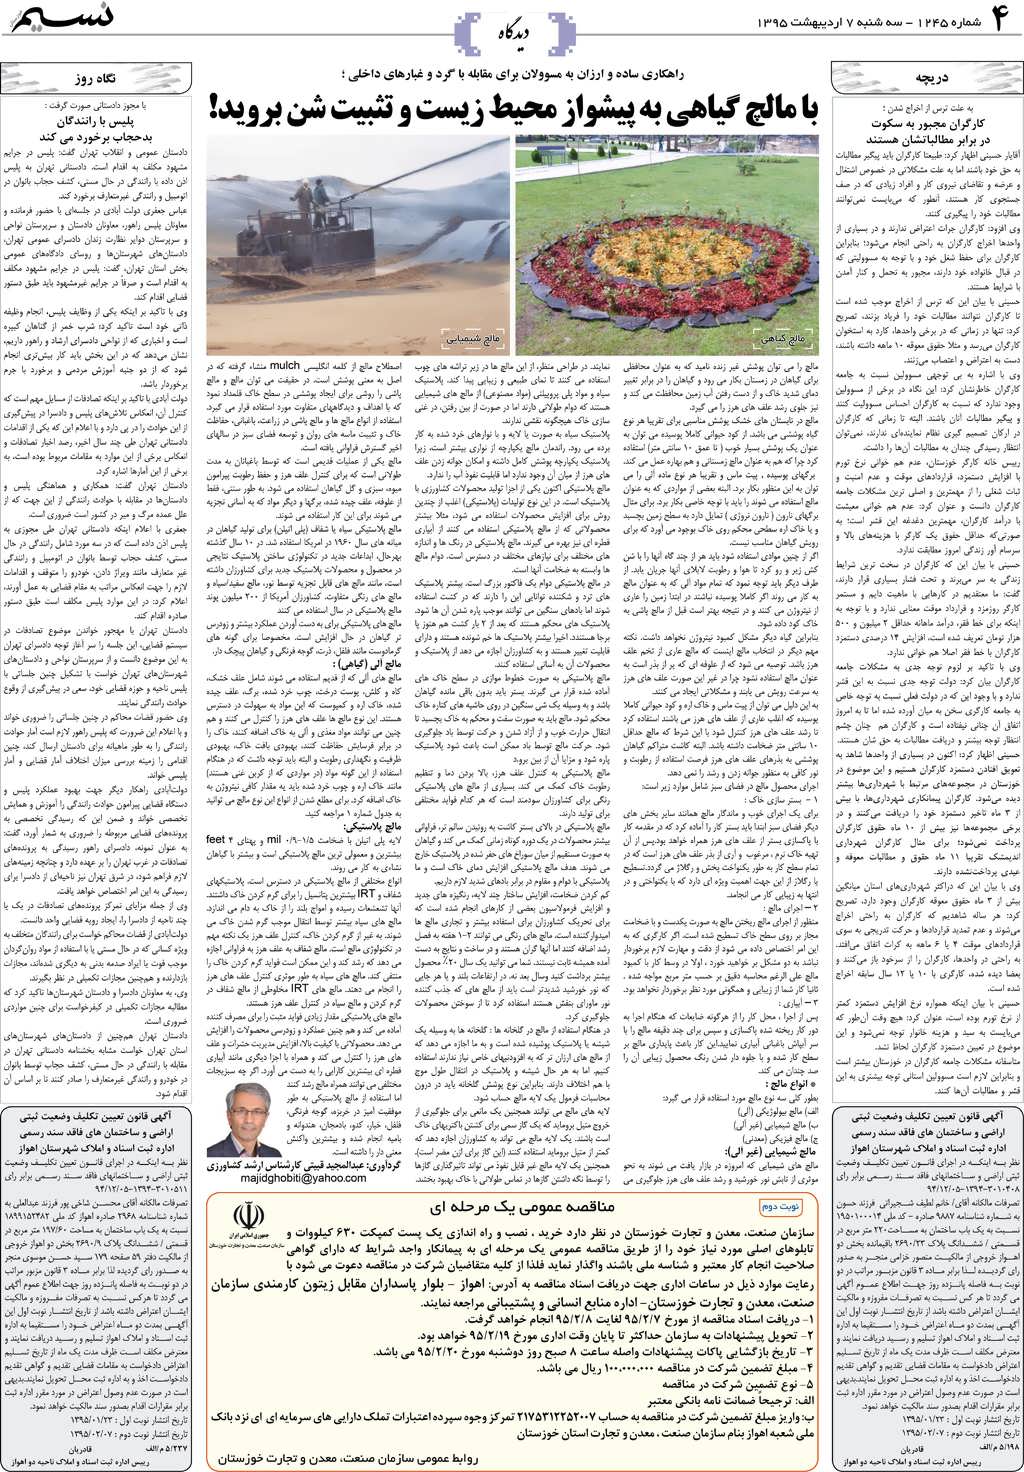 صفحه دیدگاه روزنامه نسیم شماره 1245